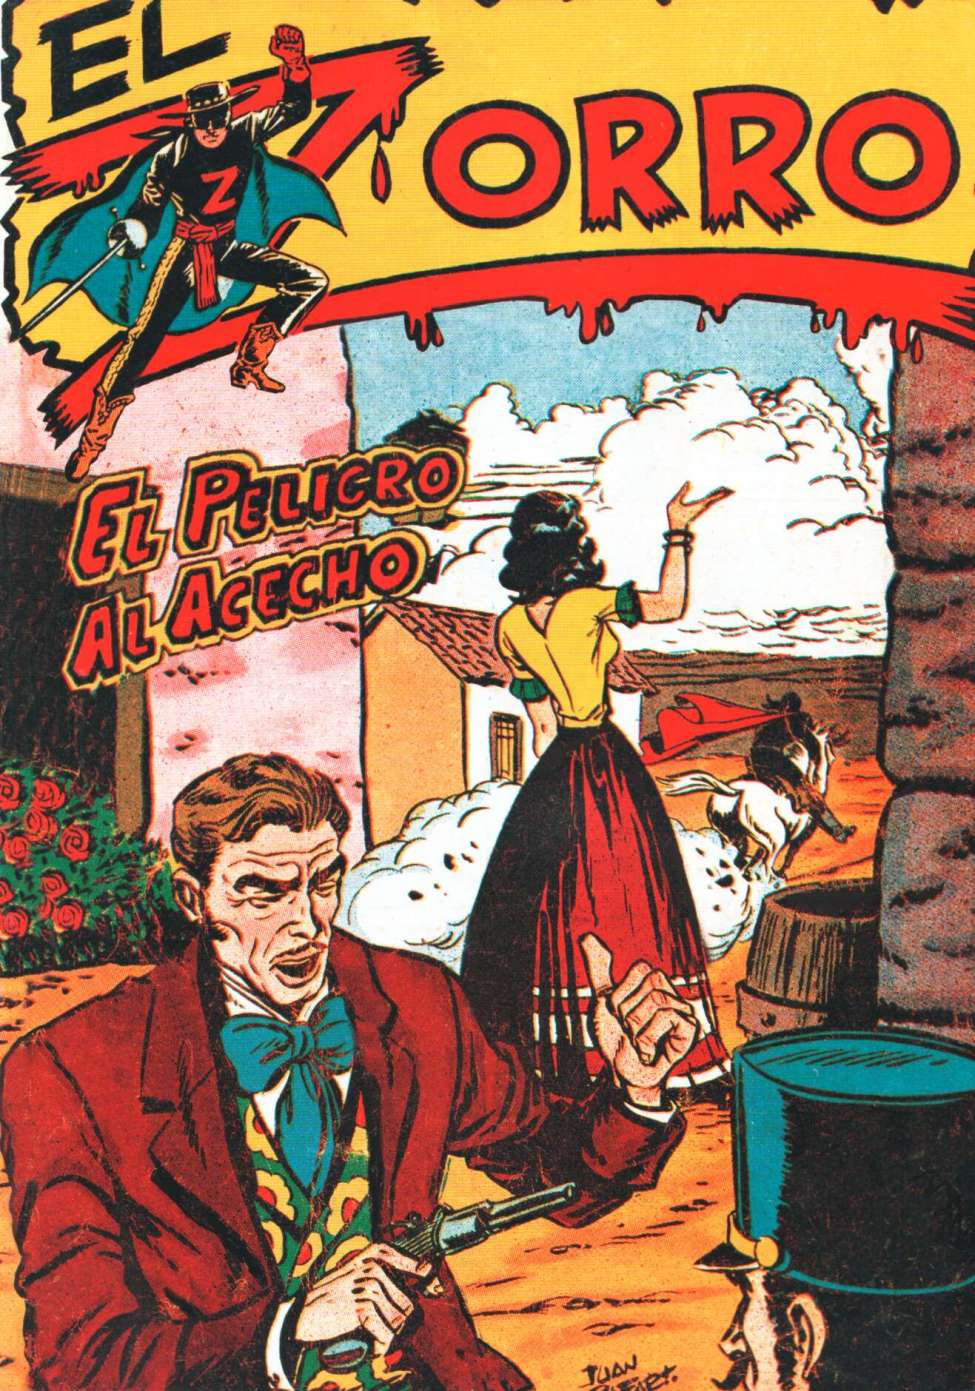 Comic Book Cover For El Zorro 24 - El Pelicro Al Acecho